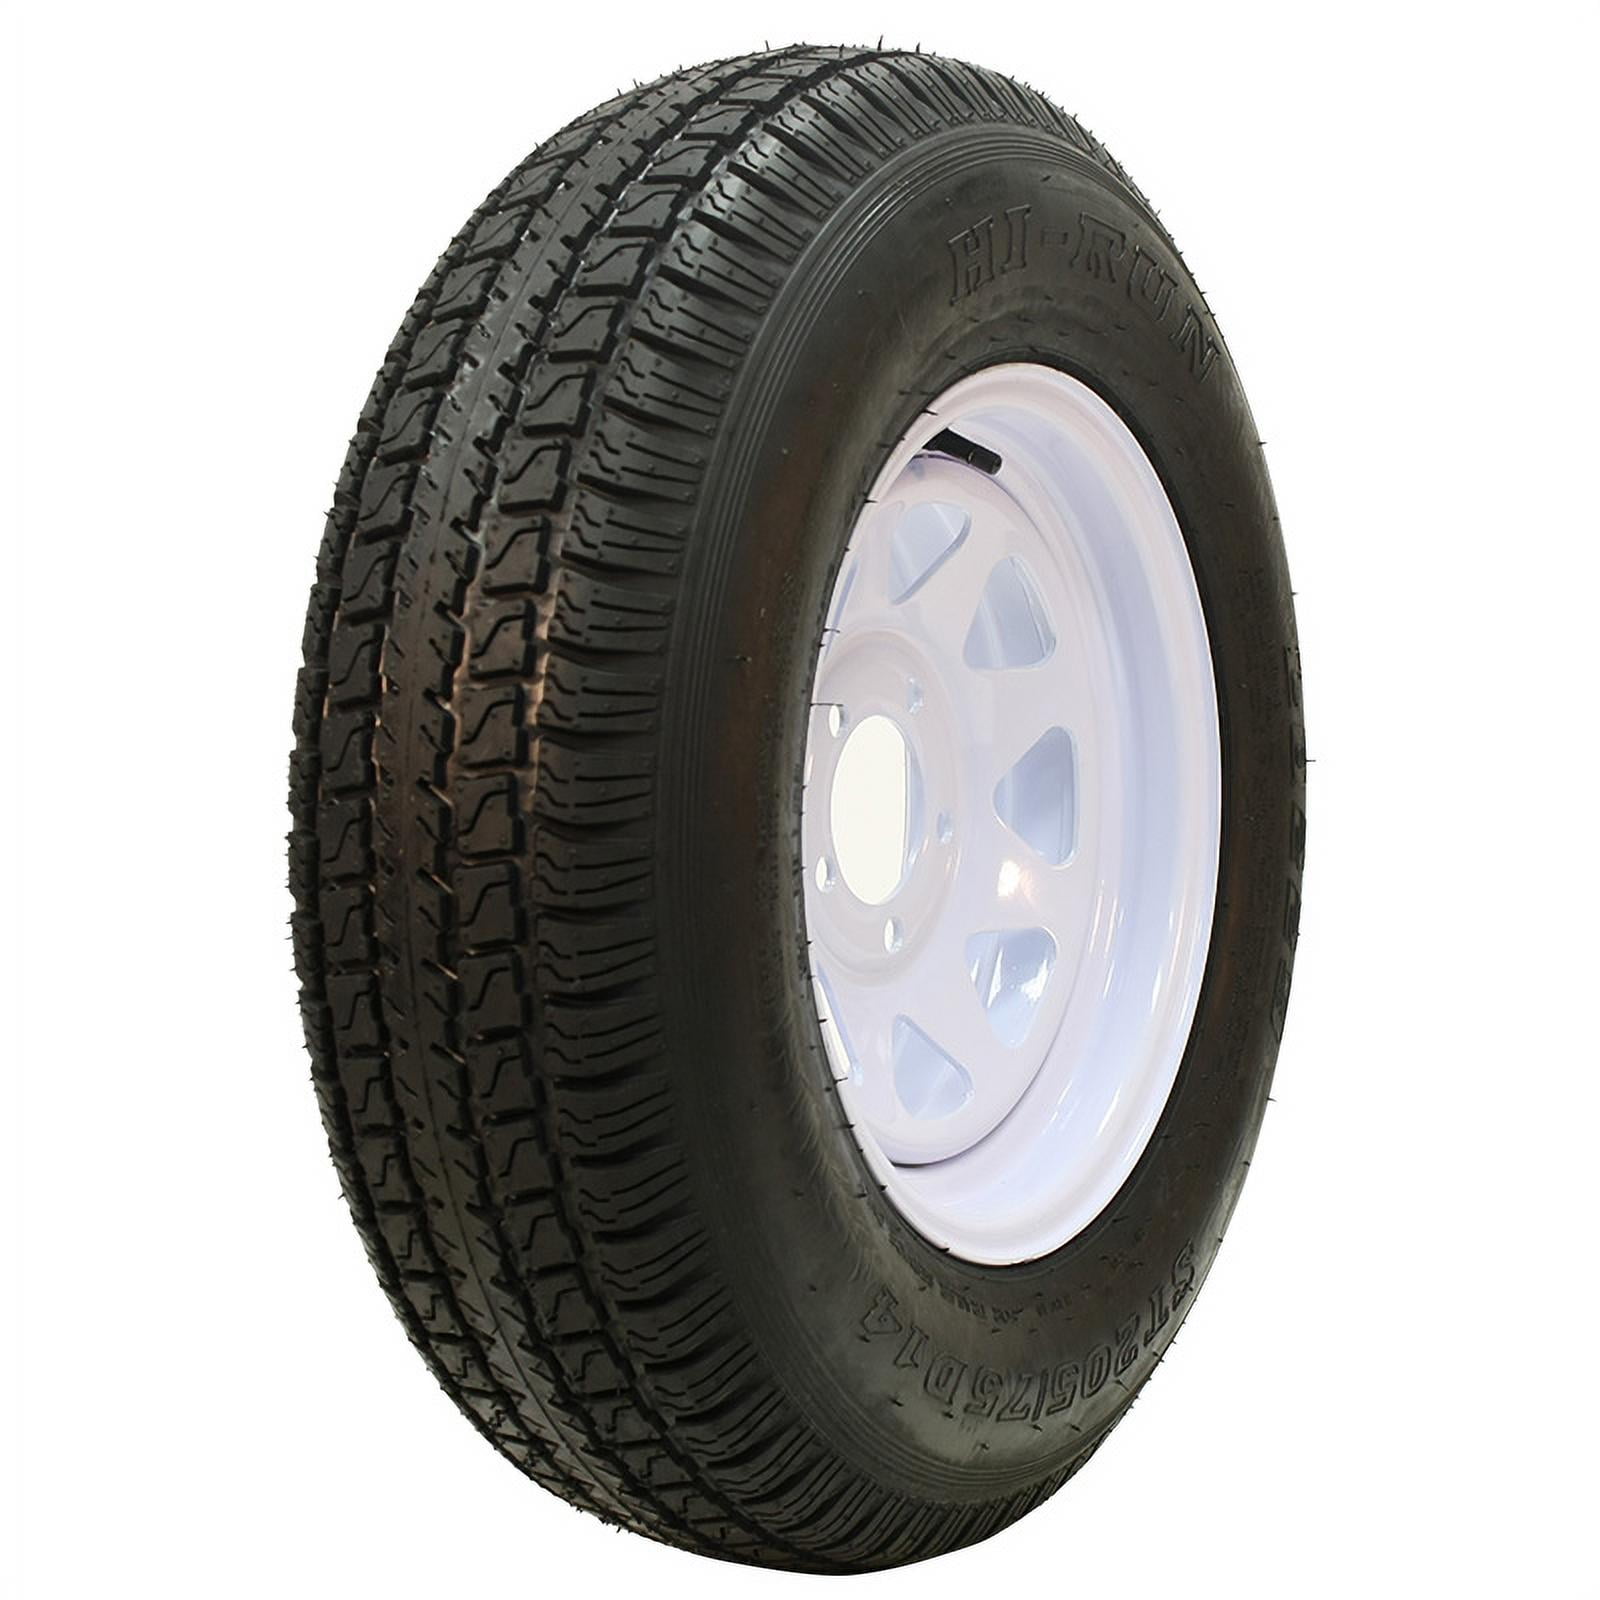 Tire Cradles Maximum width 9.84″ EASYRISE – V